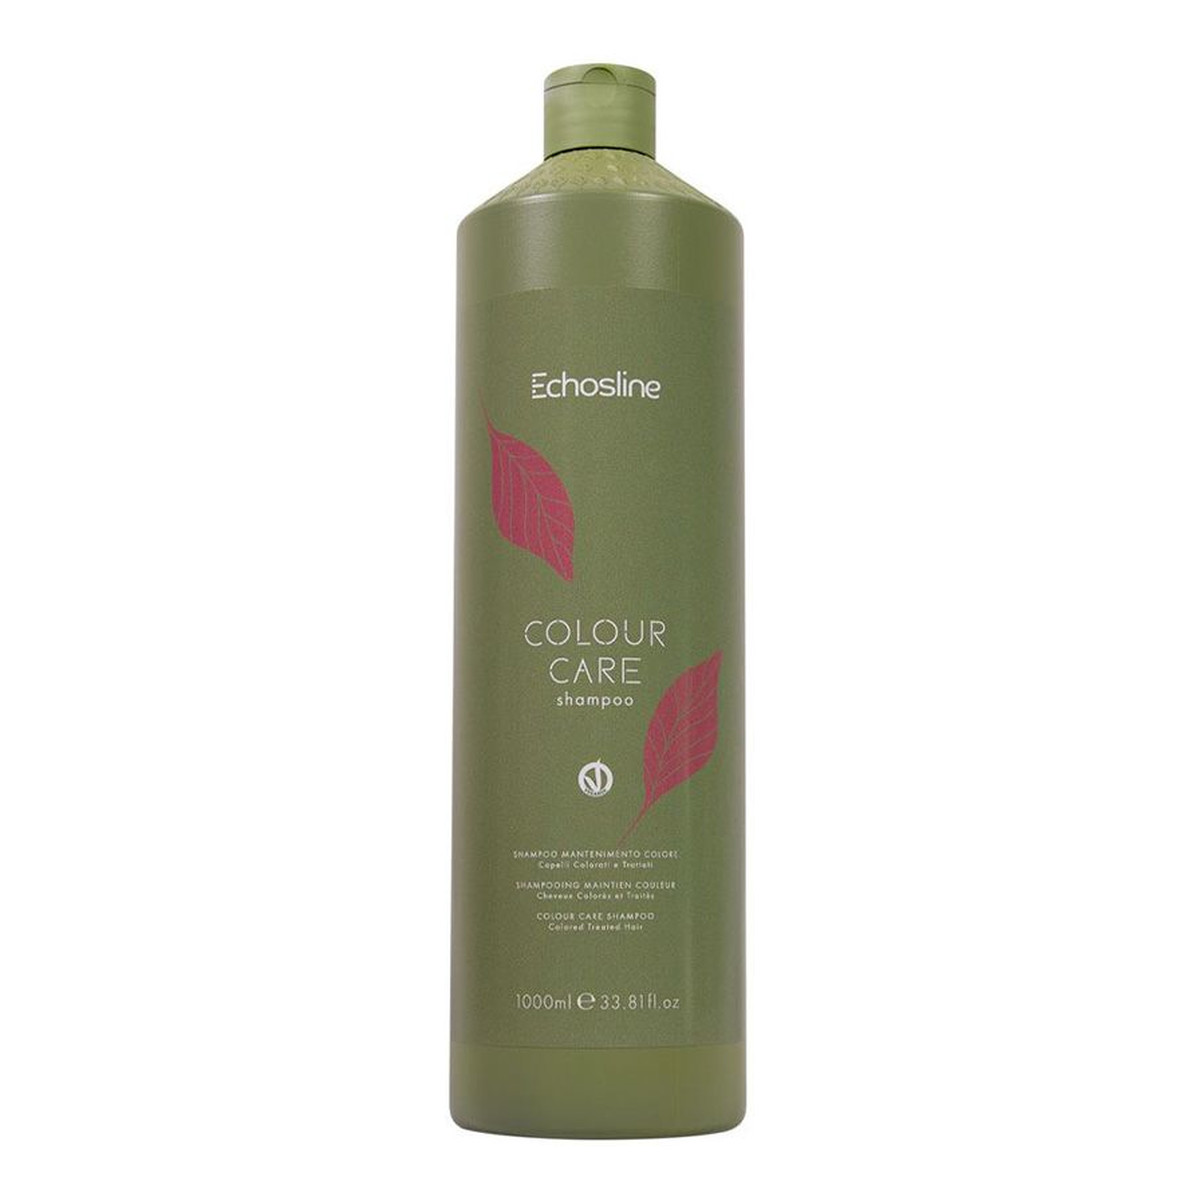 Echosline Colour care shampoo szampon do włosów farbowanych 1000ml